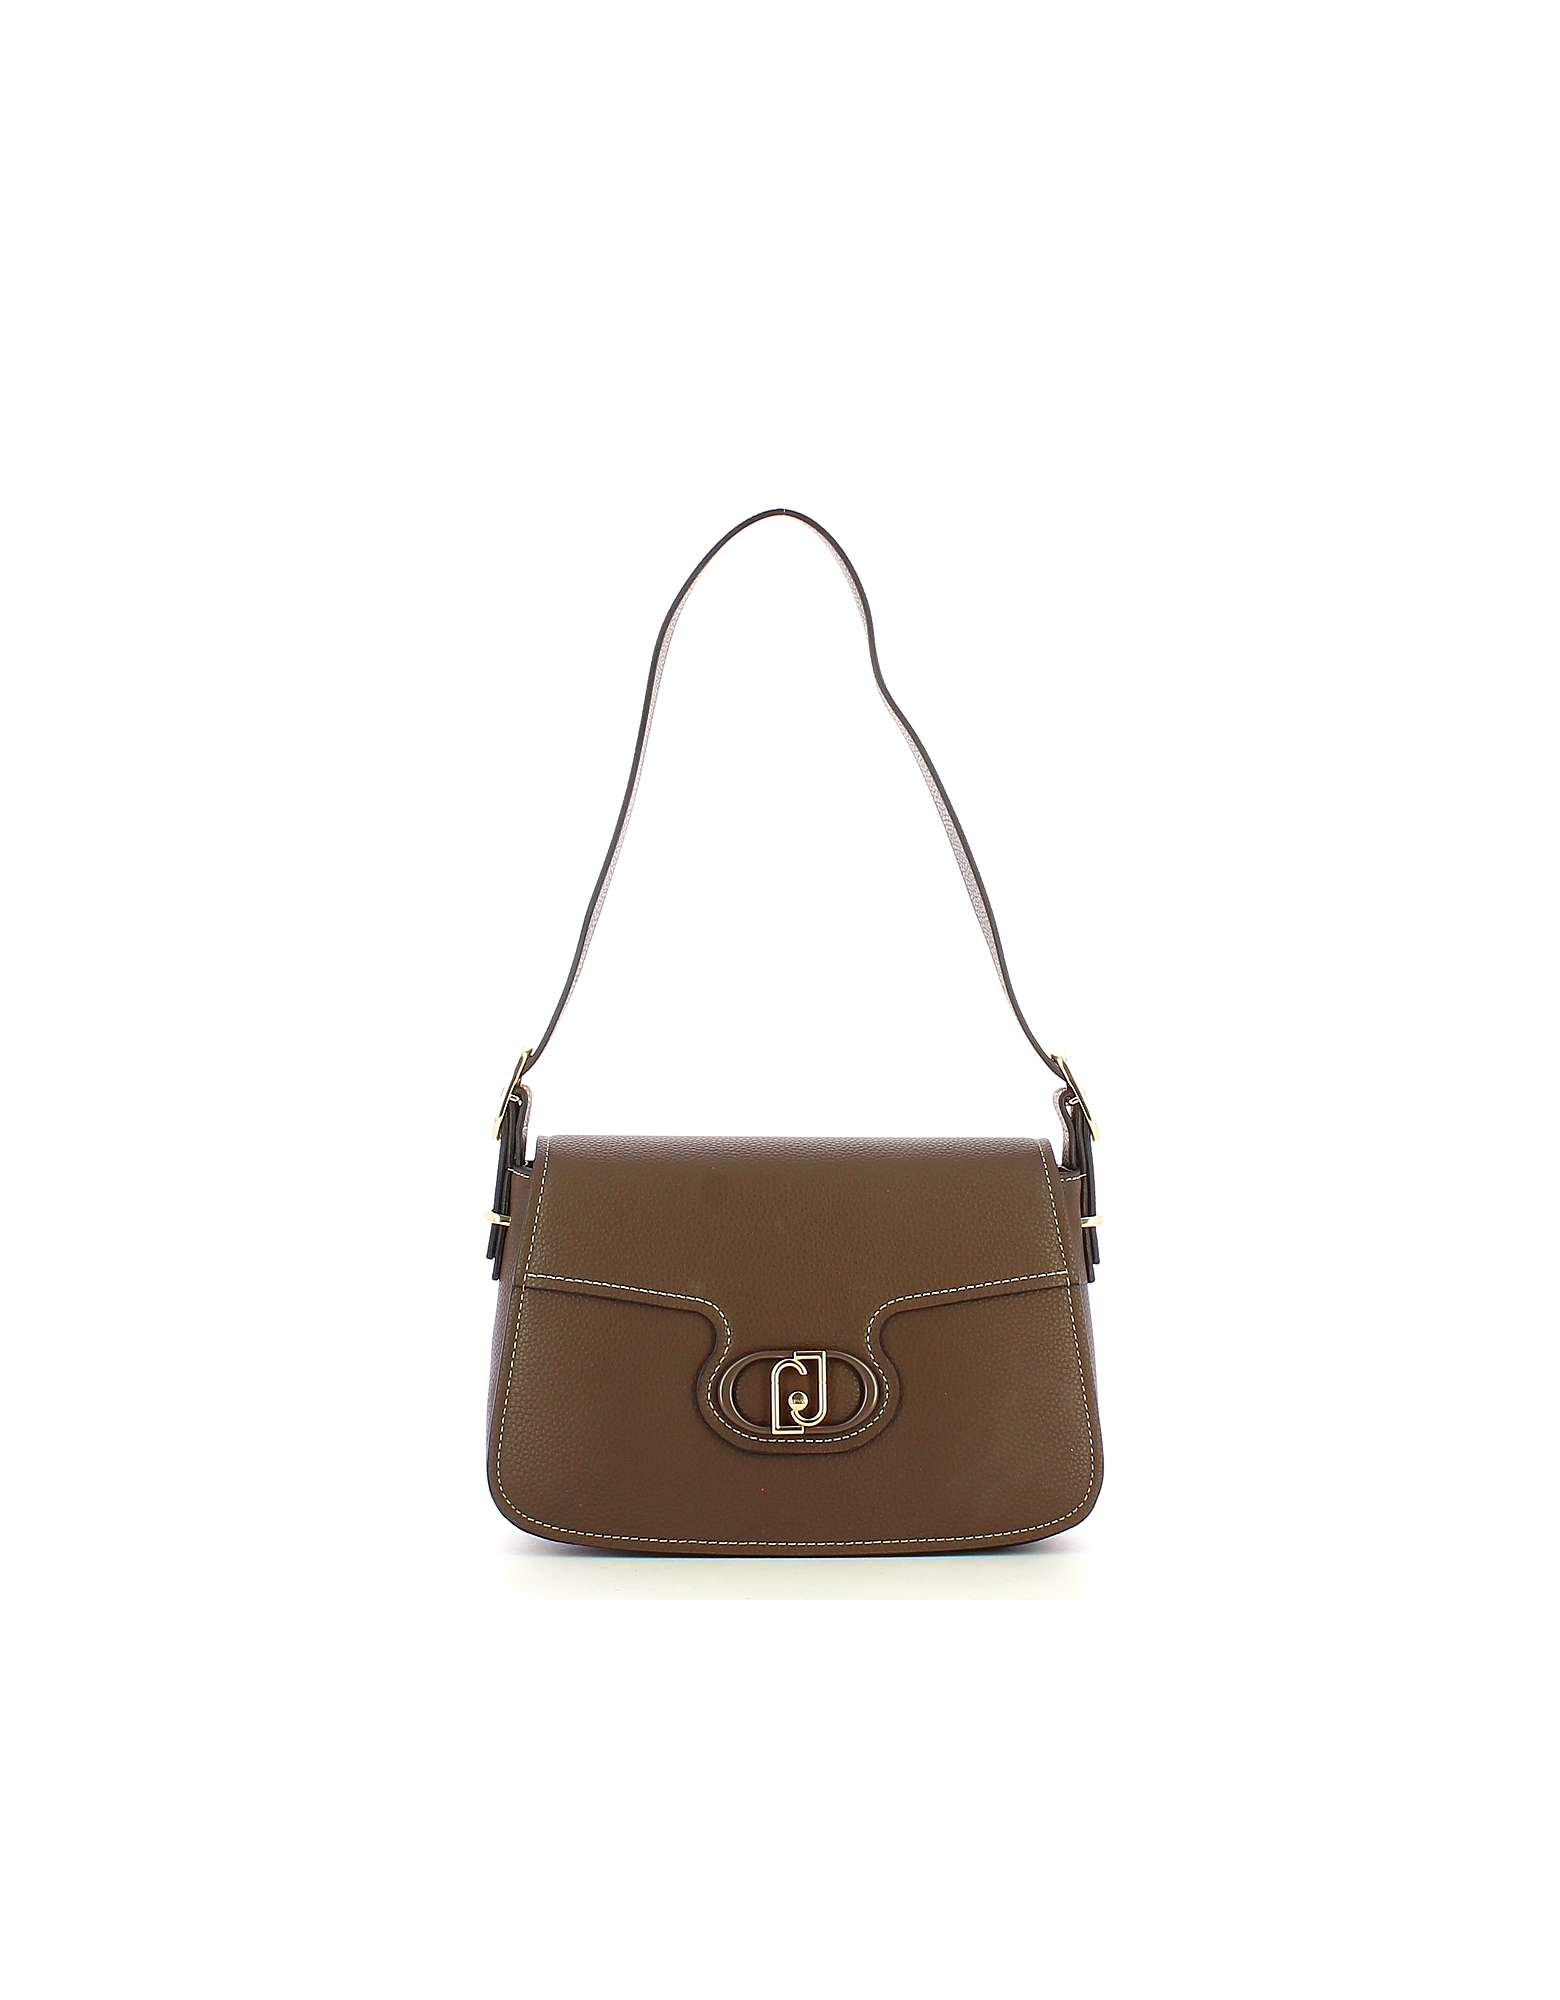 Liu •jo Designer Handbags Women's Bag In Brown